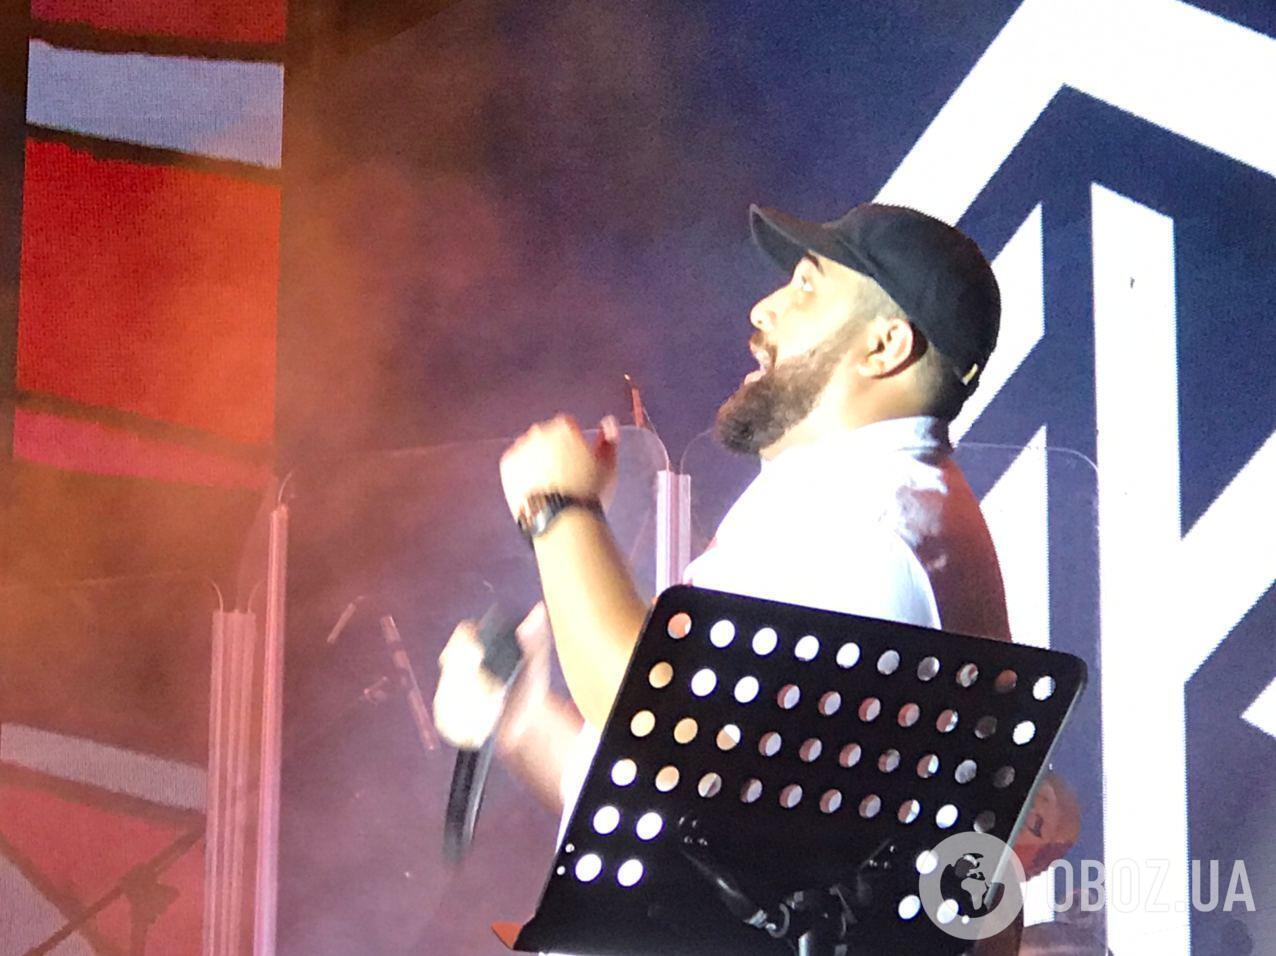 Jah Khalib выступил с концертом в Киеве